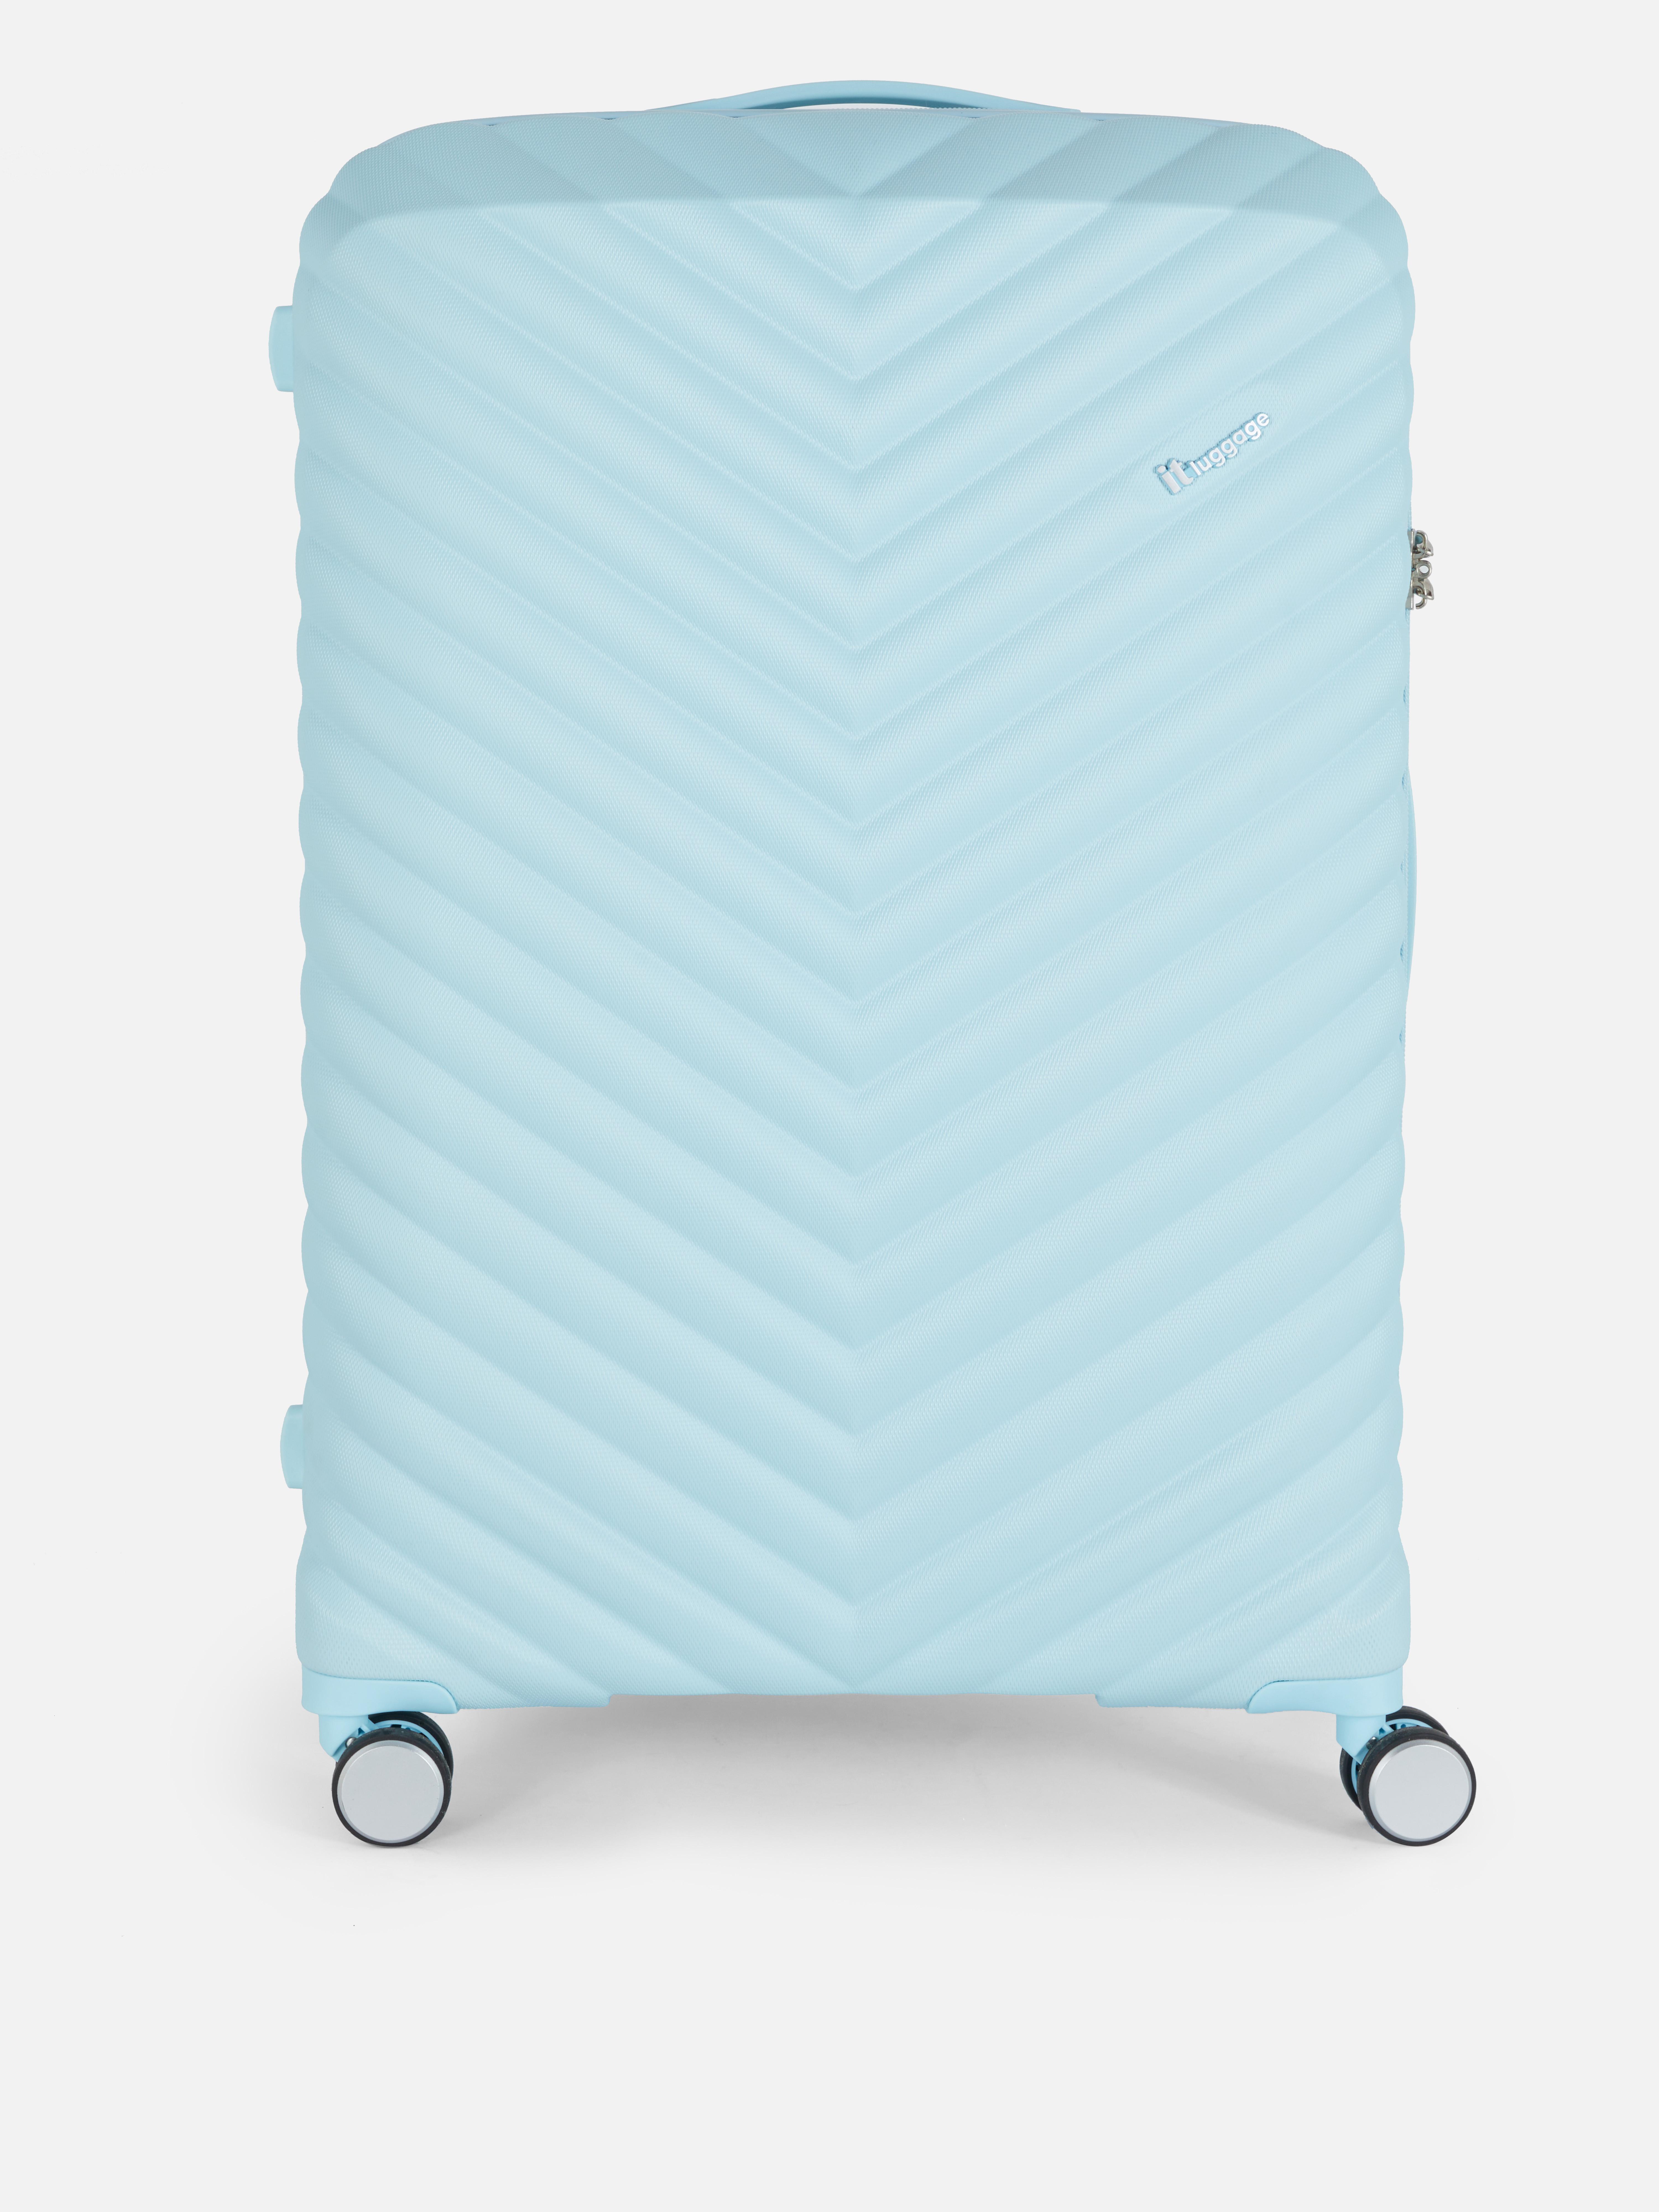 it Luggage Hard Shell Suitcase Blue